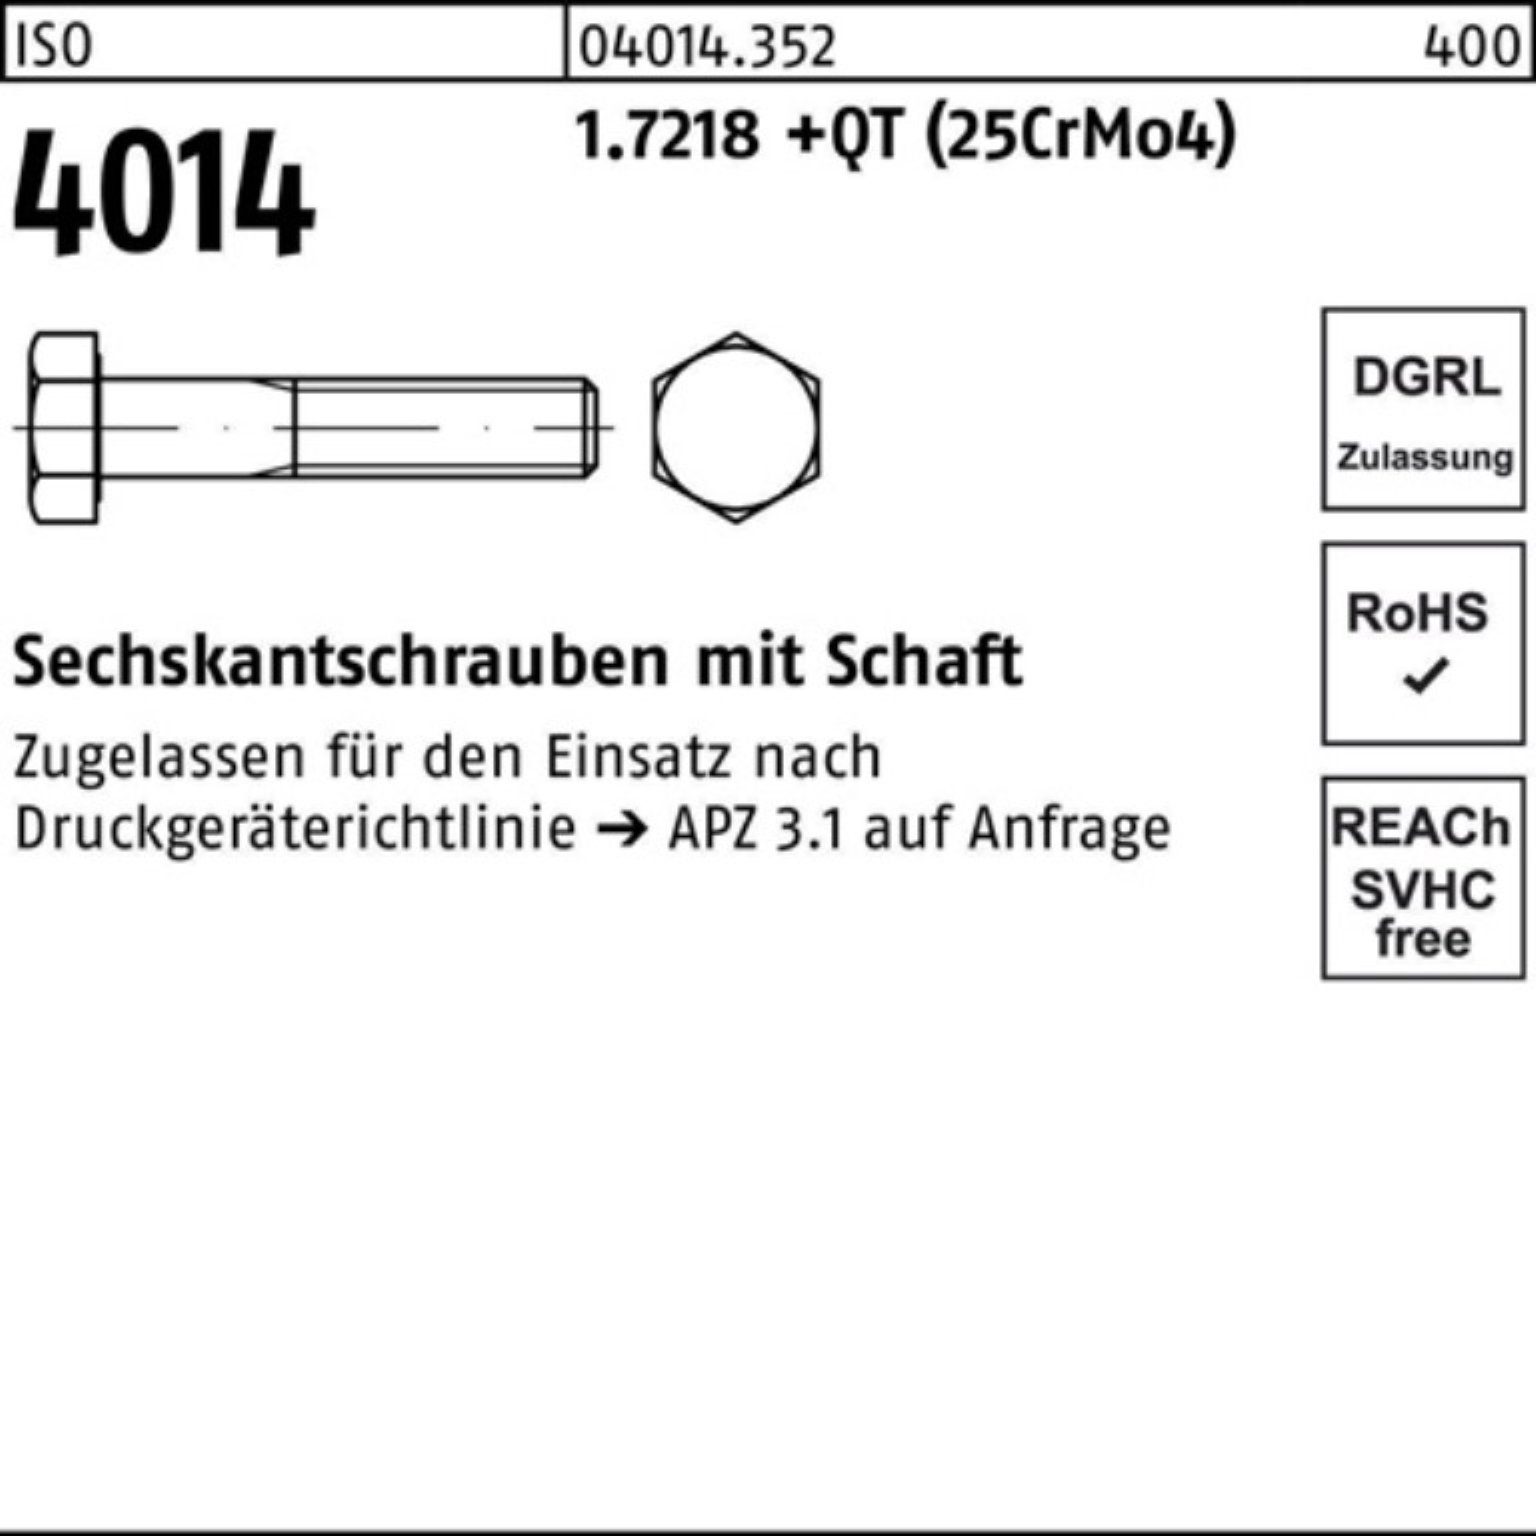 Bufab Sechskantschraube Sechskantschraube M33x +QT 200 ISO (25Cr 4014 Pack 1.7218 Schaft 100er